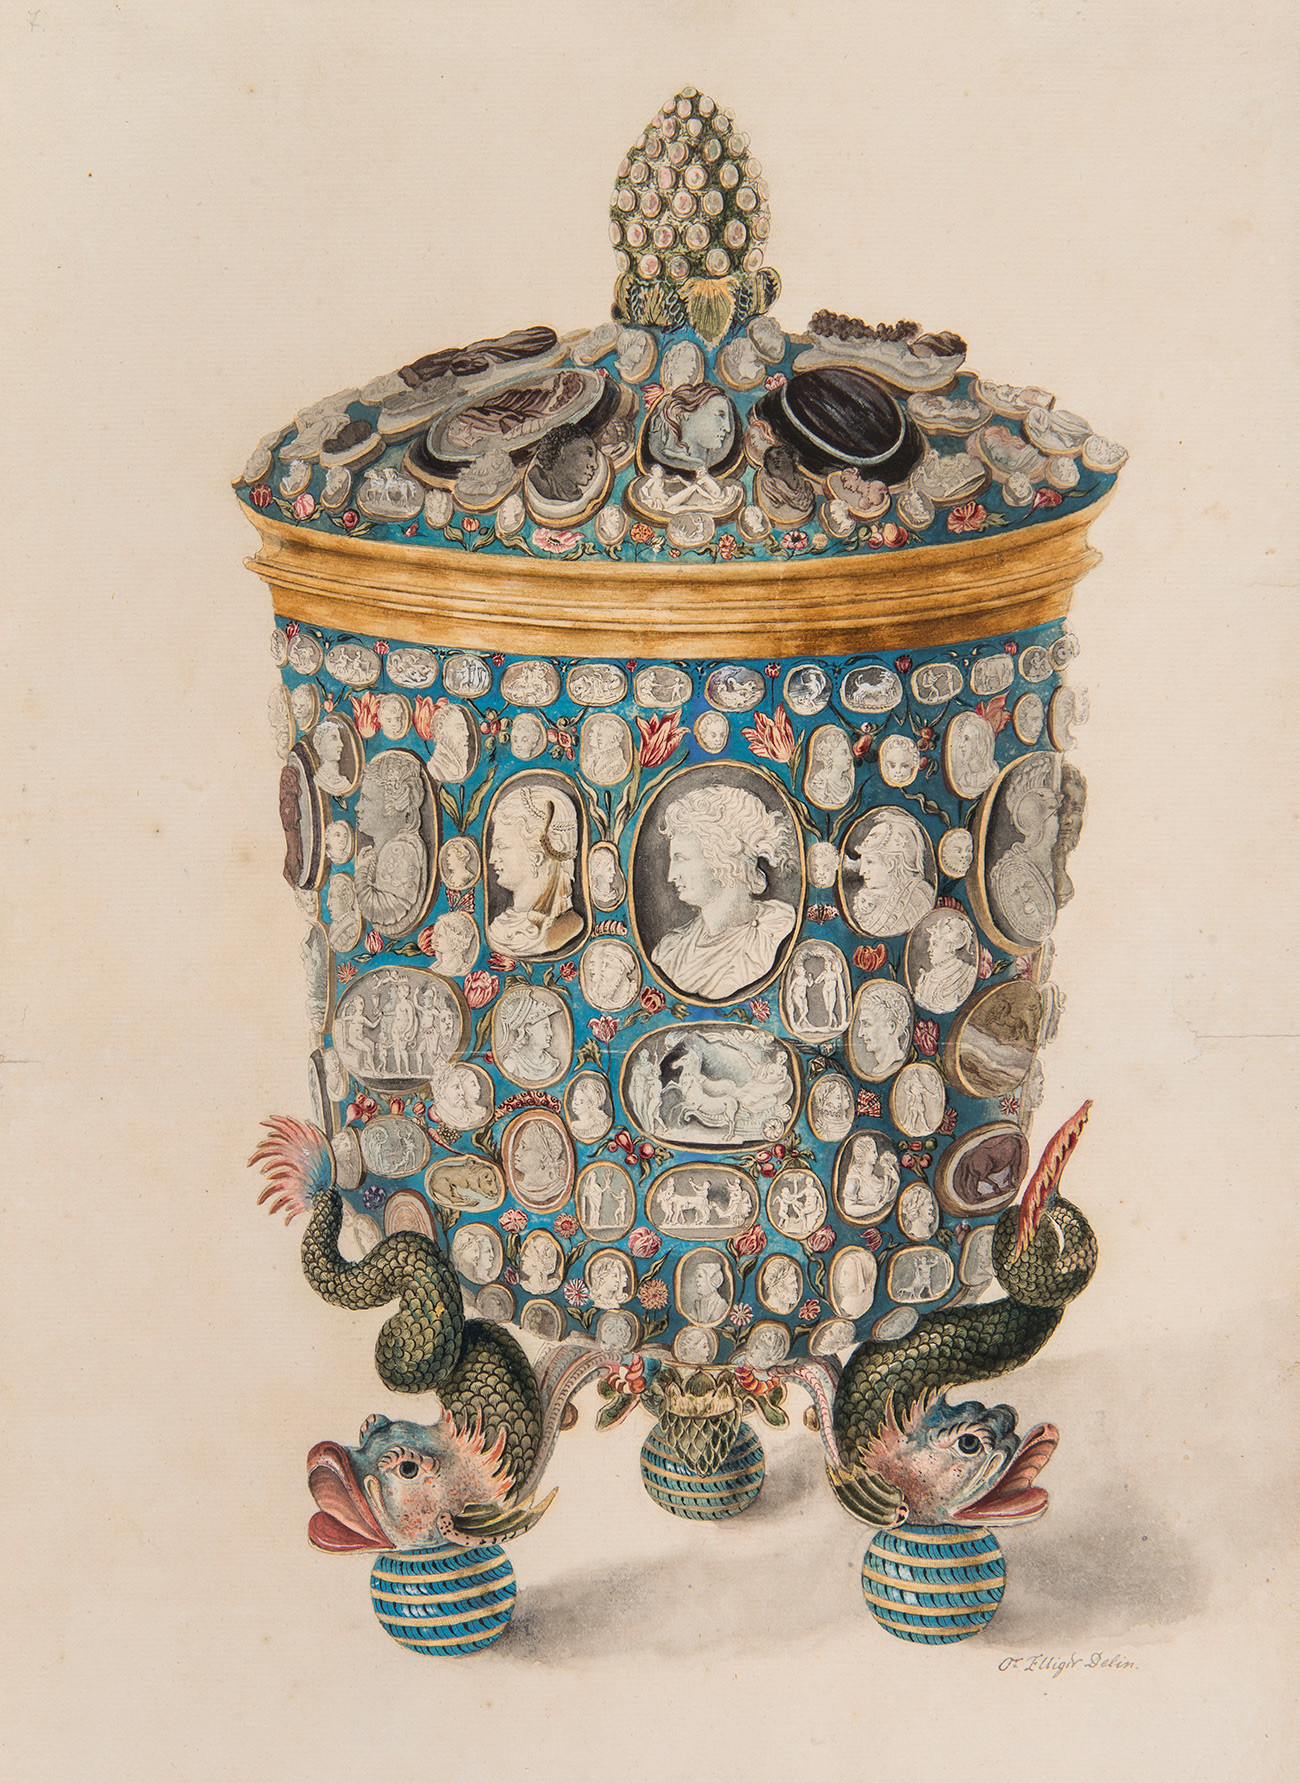 ОТМАР ЕЛИГЕР: ПЕХАР СА ПОКЛОПЦЕМ УКРАШЕН ДРАГУЉИМА



Акварел. Русија, око 1730.



Папир, четкица, перо, позлата, мастило, водене боје

